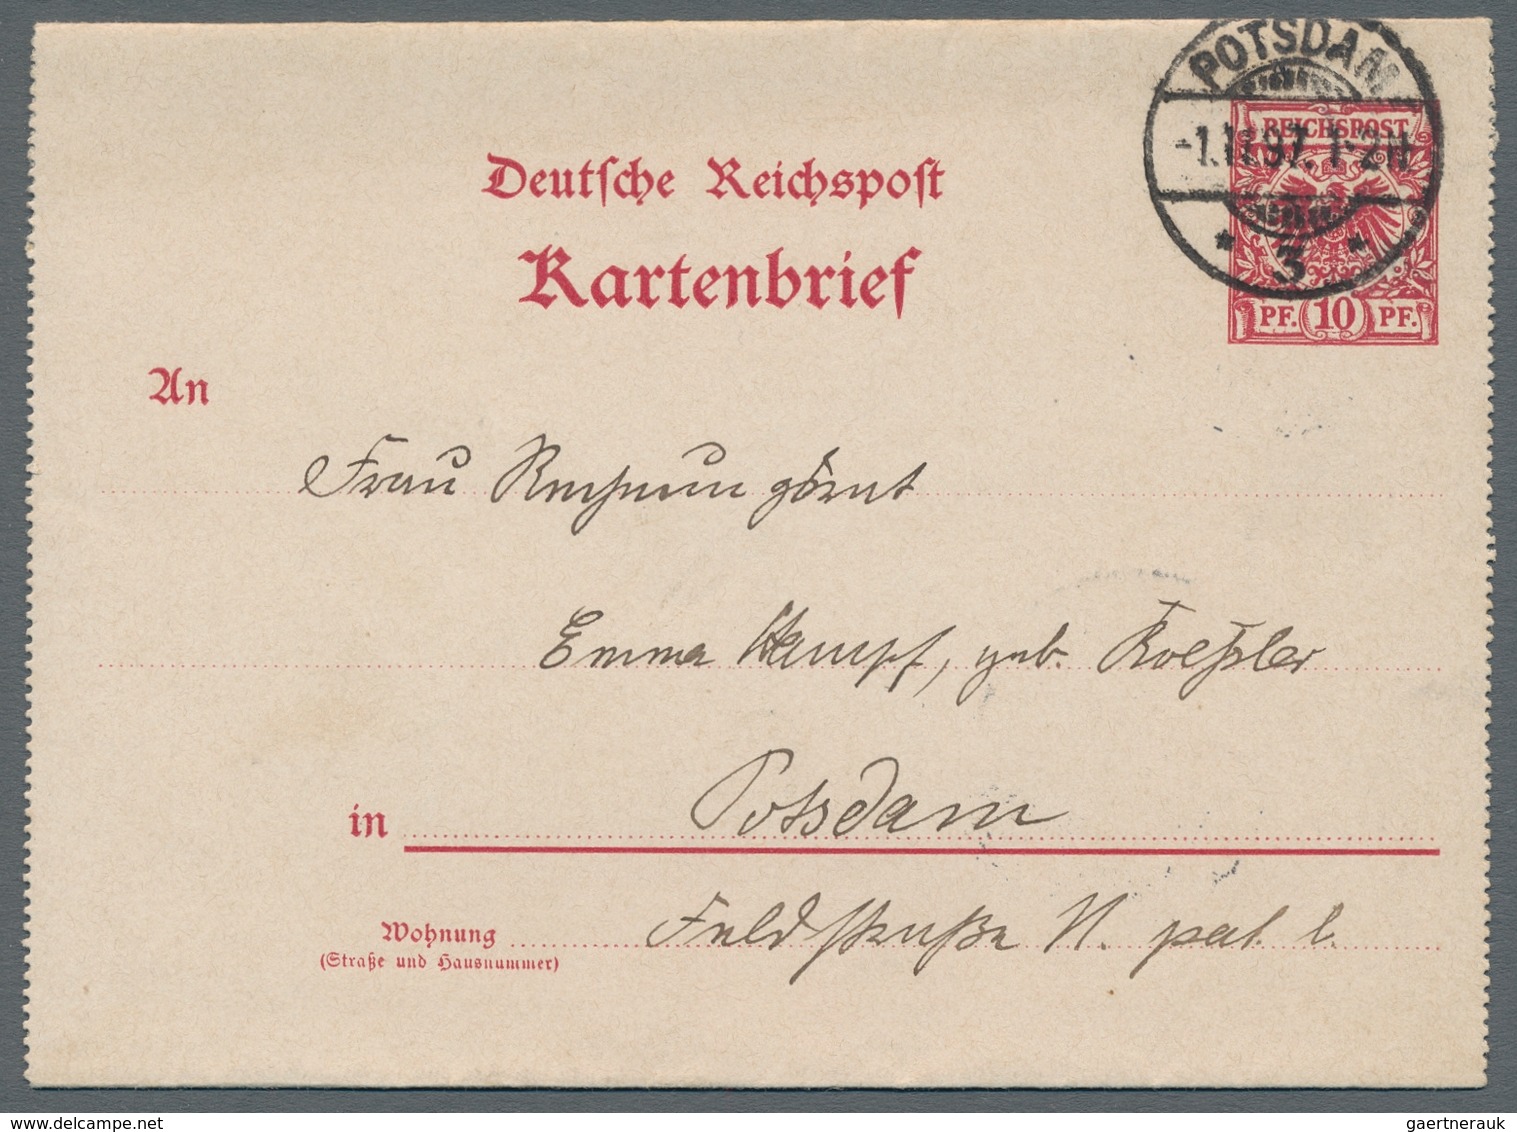 Deutsches Reich - Ganzsachen: 1897, "10 Pfg. Krone/Adler", sechs mit Ersttagsstempel 1. 11. 97 entwe